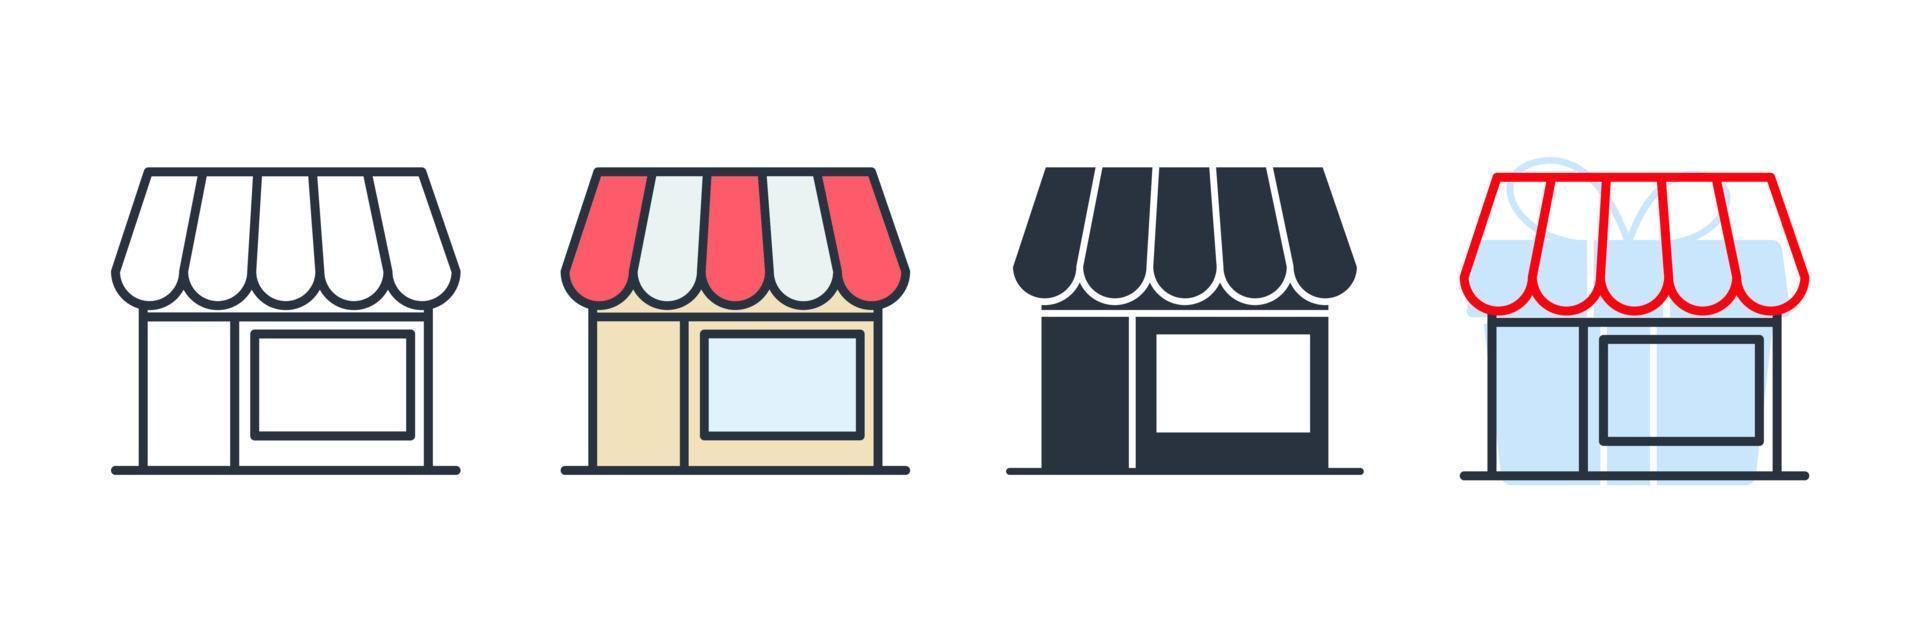 butik ikon logotyp vektorillustration. marknadsplats symbol mall för grafik och webbdesign samling vektor